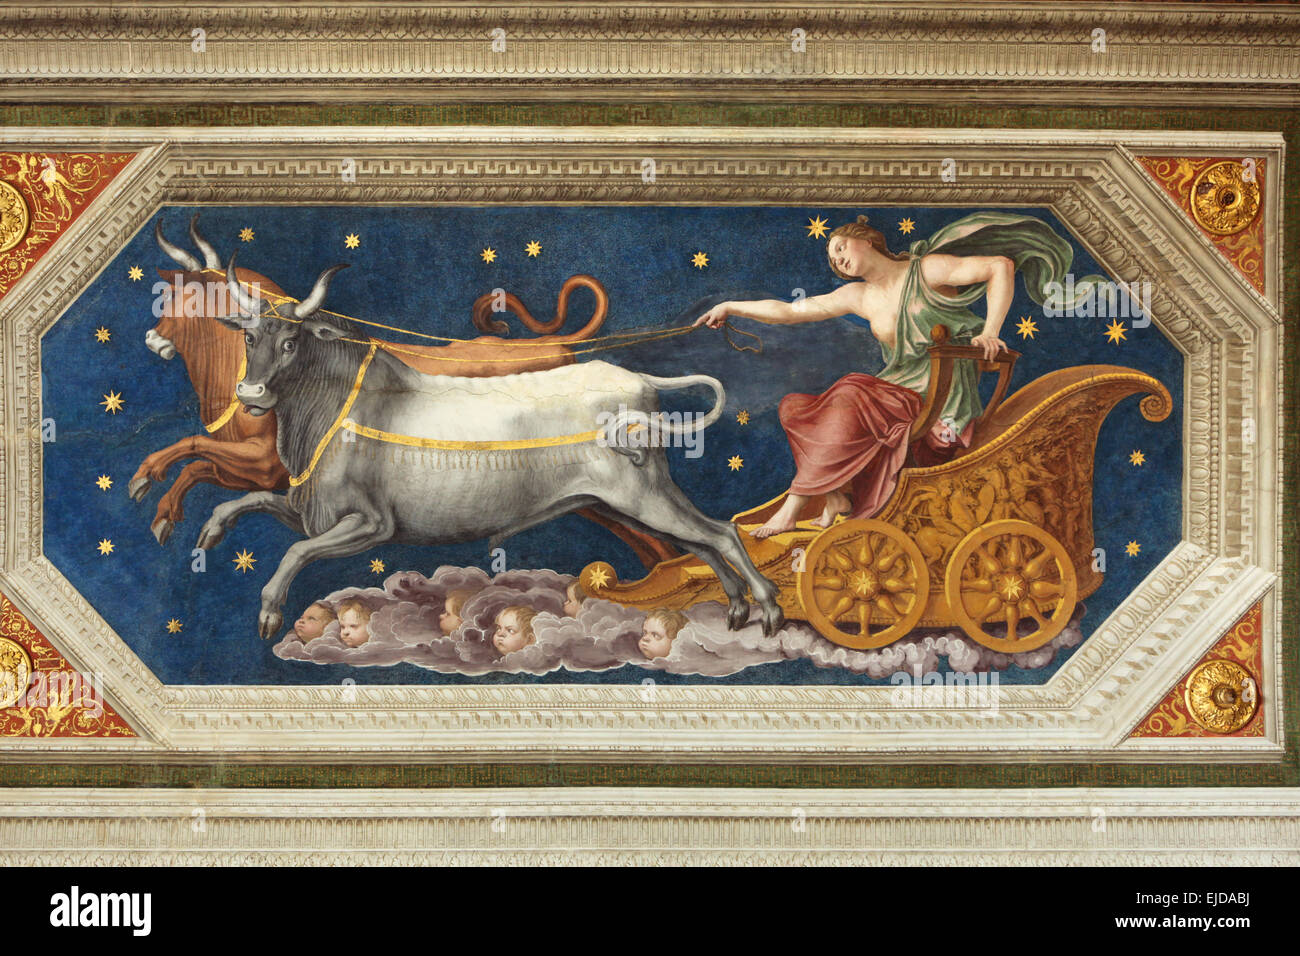 Nymphe Callisto mit dem Wagen. Fresko von Baldassarre Peruzzi in der Loggia des Galatea in der Villa Farnesina in Rom, Italien. Nymphe Callisto ist auf dem Jupiter Feuerwagen abgebildet gezogen von zwei Stiere in Sternbild Großer Bär verwandelt werden. Stockfoto